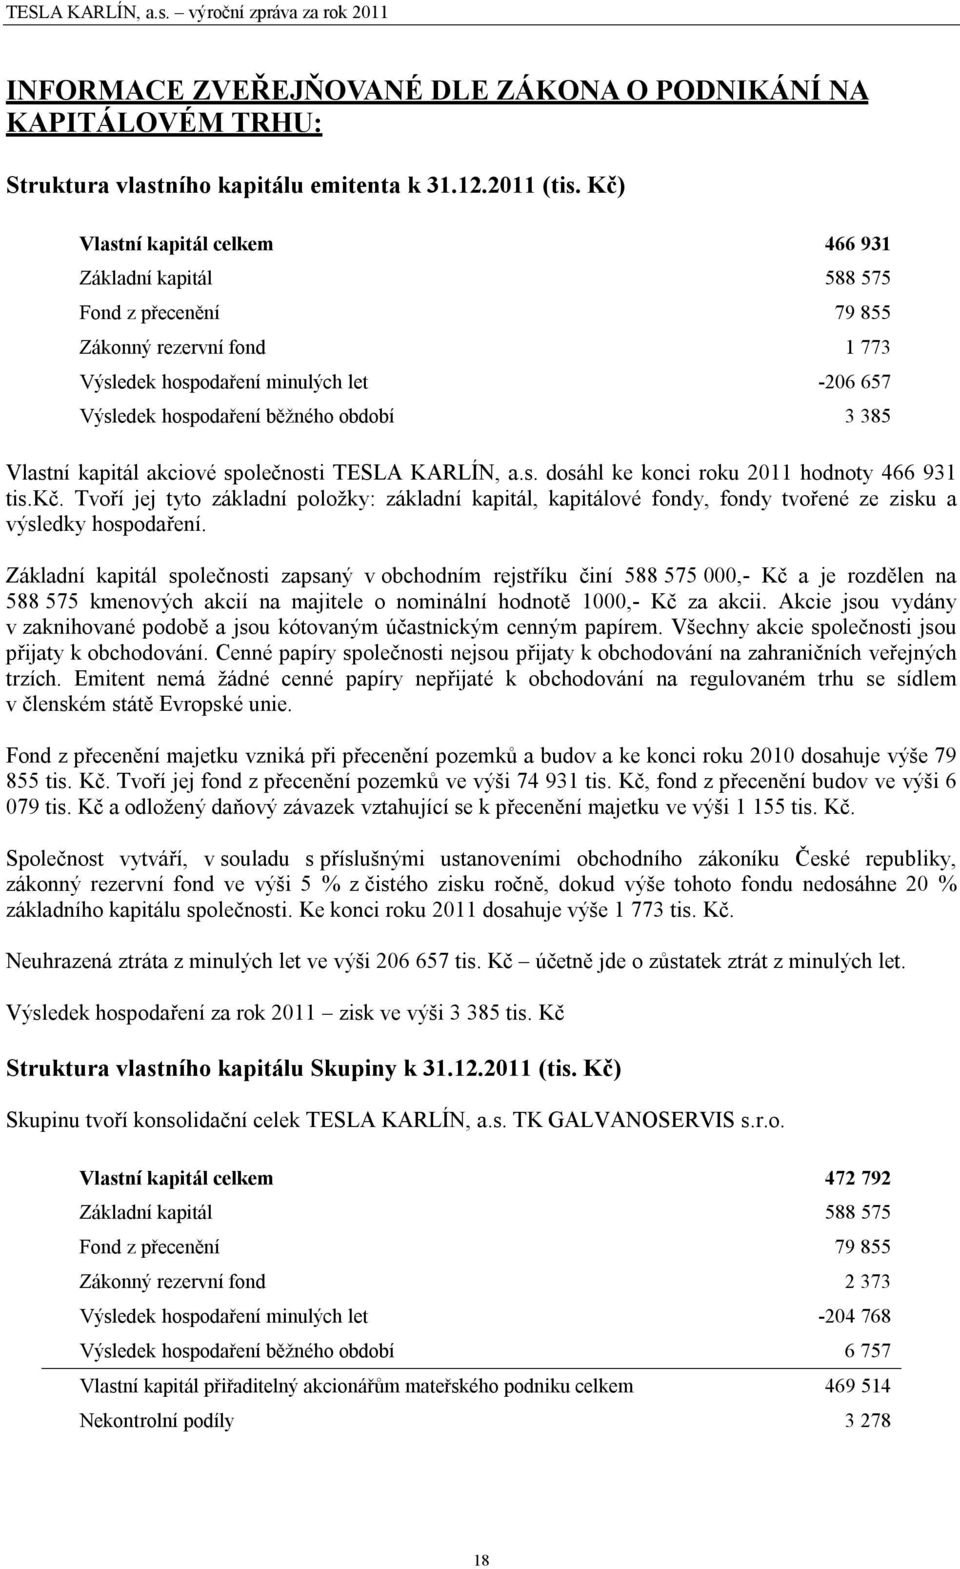 Vlastní kapitál akciové společnosti TESLA KARLÍN, a.s. dosáhl ke konci roku 2011 hodnoty 466 931 tis.kč.